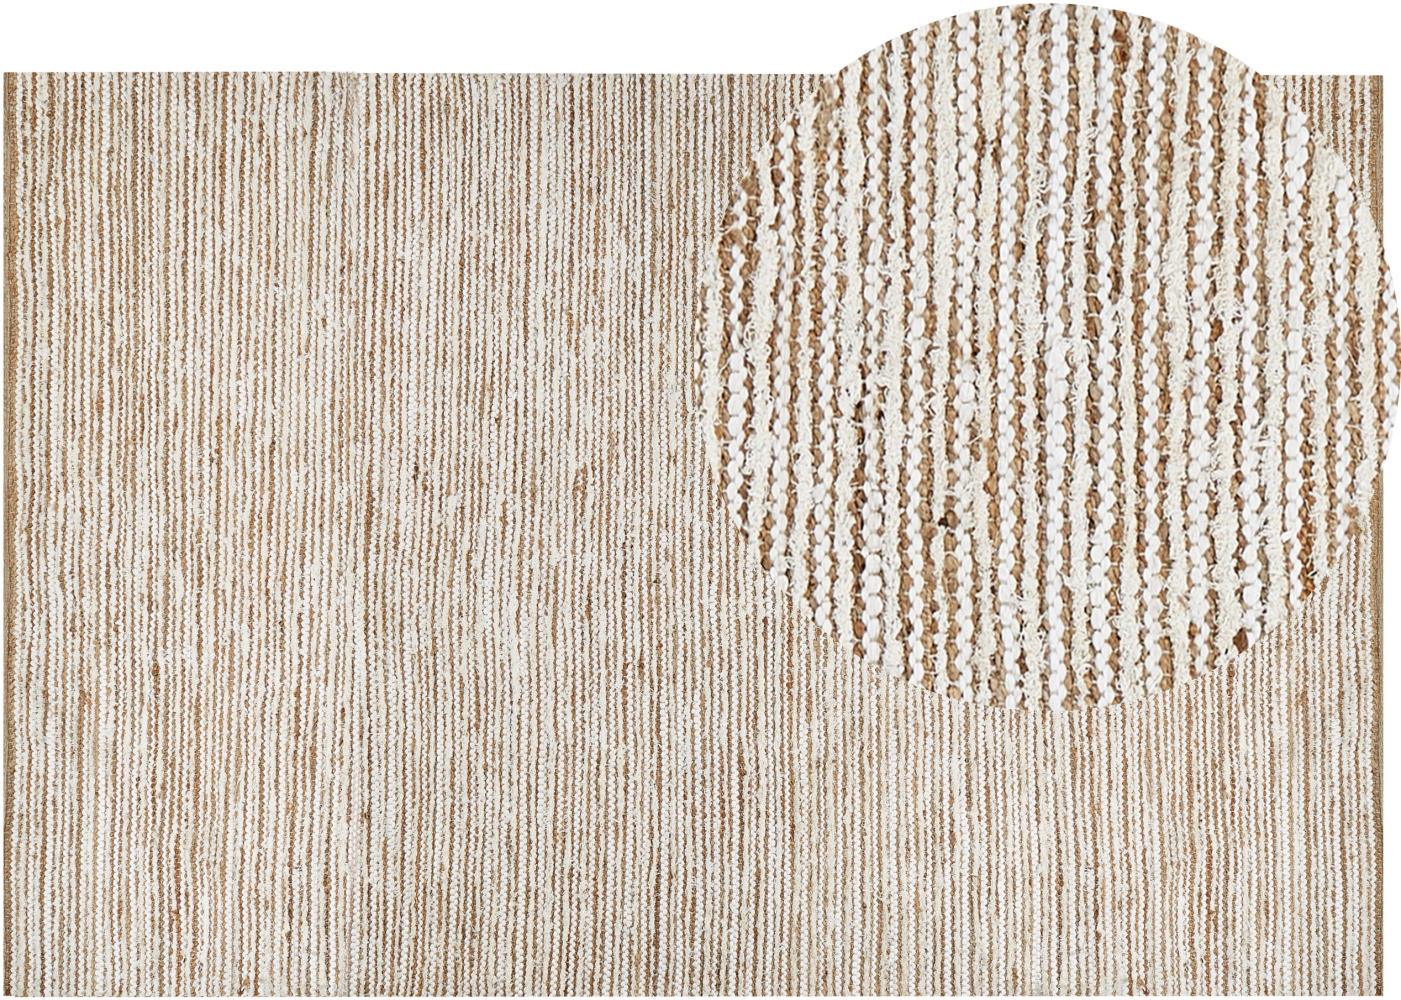 Teppich Baumwolle beige weiß 200 x 300 cm BARKHAN Bild 1